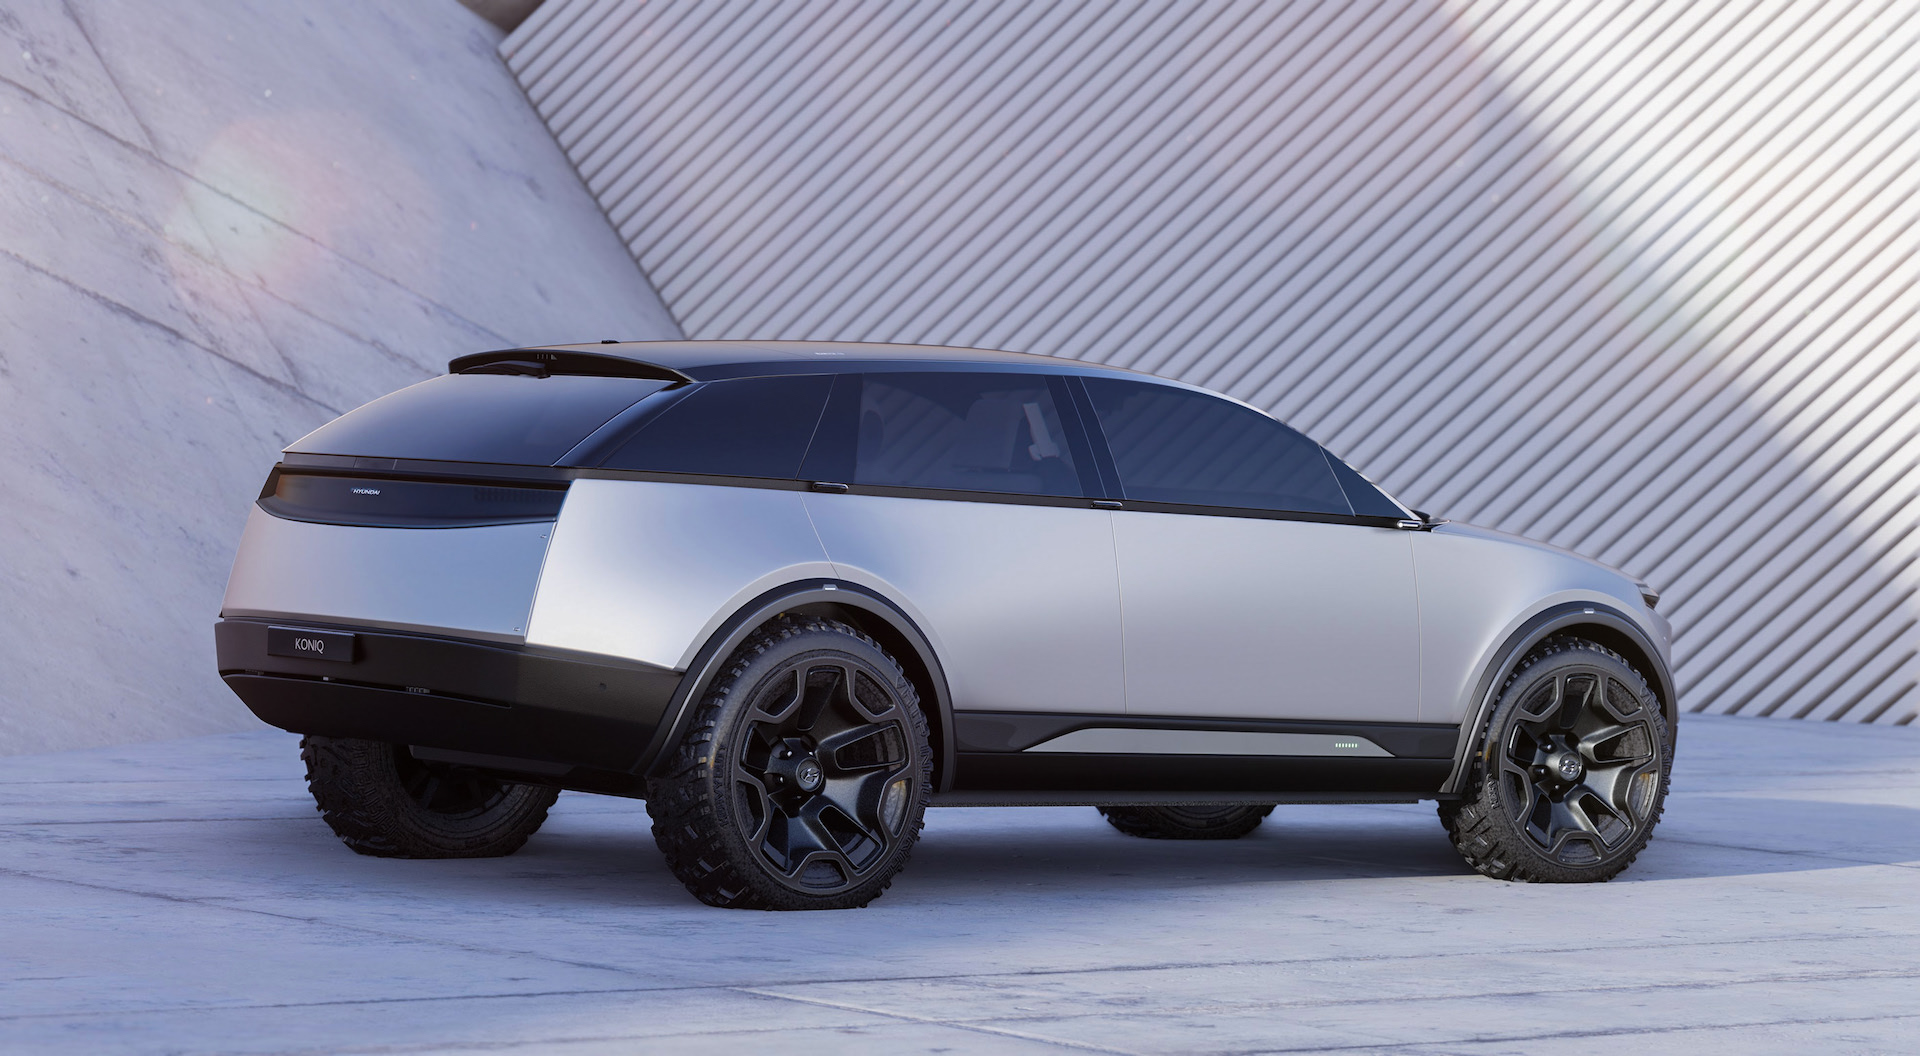 跨界风格设计 现代全新纯电动SUV Kioniq假想图